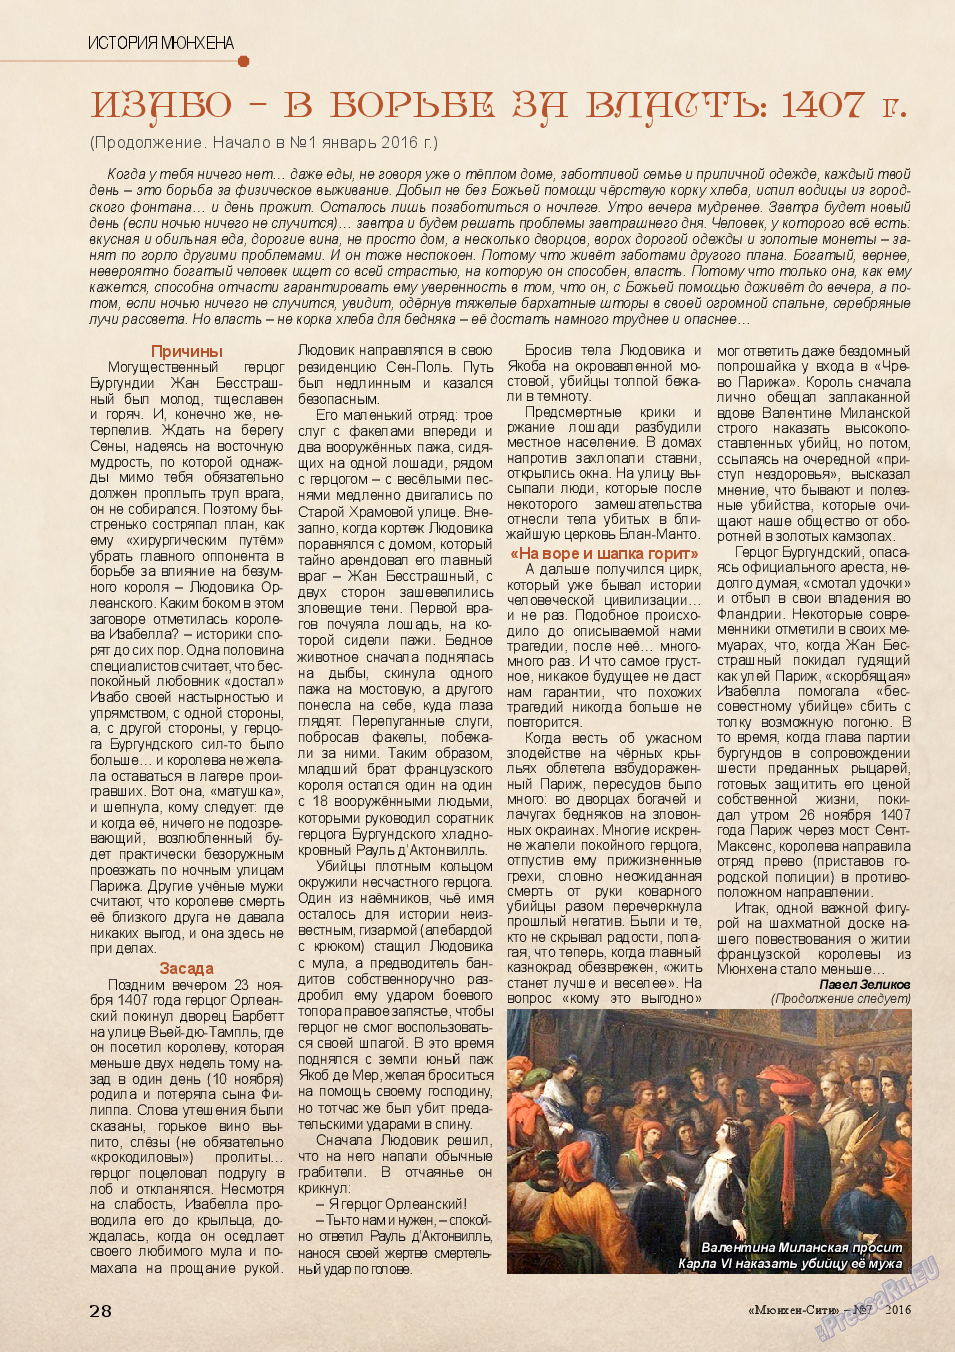 Мюнхен-сити (журнал). 2016 год, номер 7, стр. 28